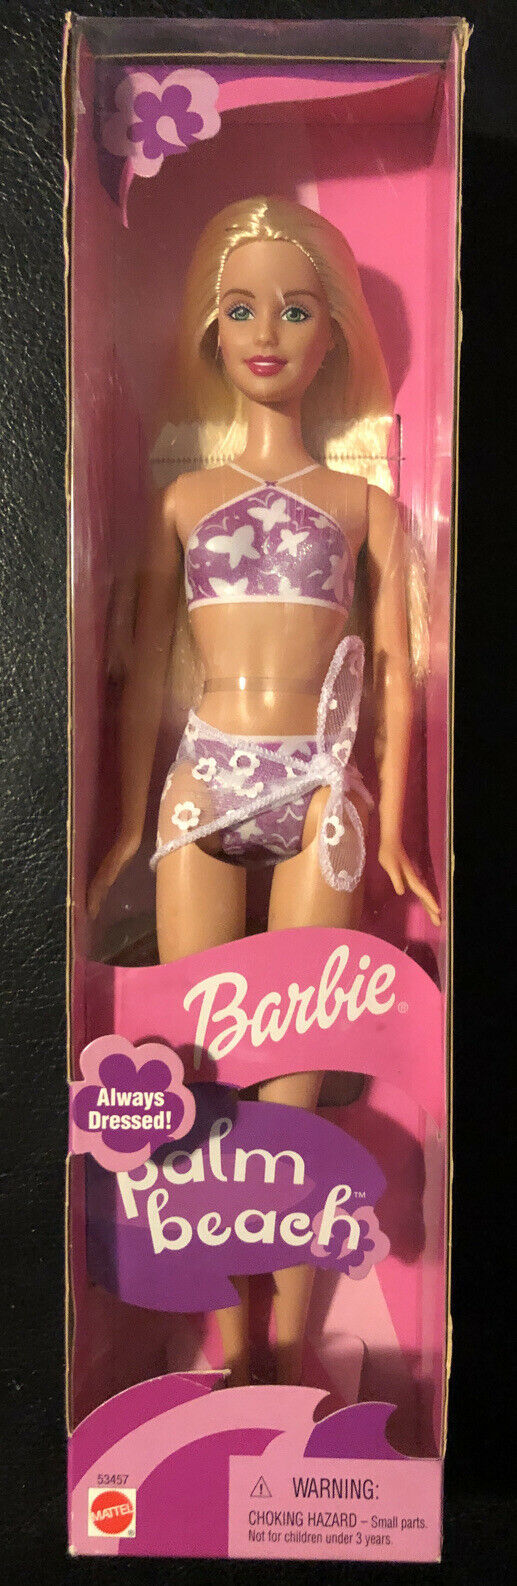 Palm Beach 2001 Barbie Doll Nrfb Always Dressed!